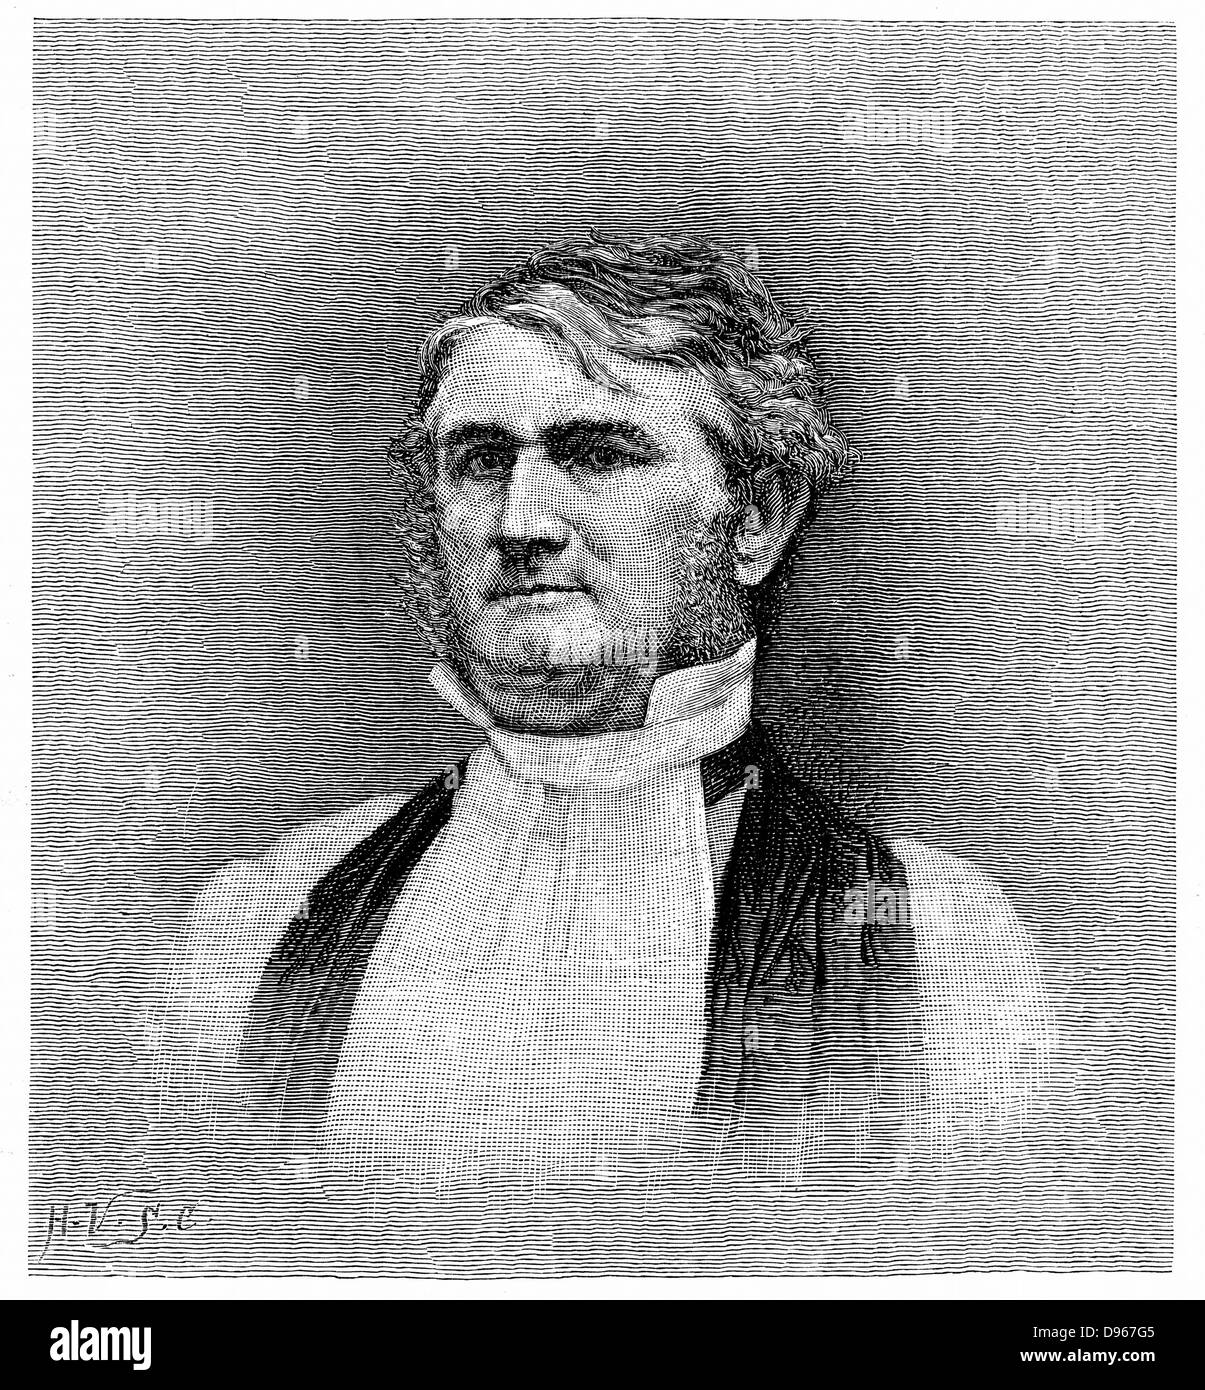 Leonidas Polk (1806-1864) amerikanischer Kleriker und Soldat. Bischof von Arkansas 1838, von Louisiana aus dem Jahr 1841. Geboten Korps der konföderierten Truppen während des Amerikanischen Bürgerkrieg 1861-1865. Gravur. Stockfoto